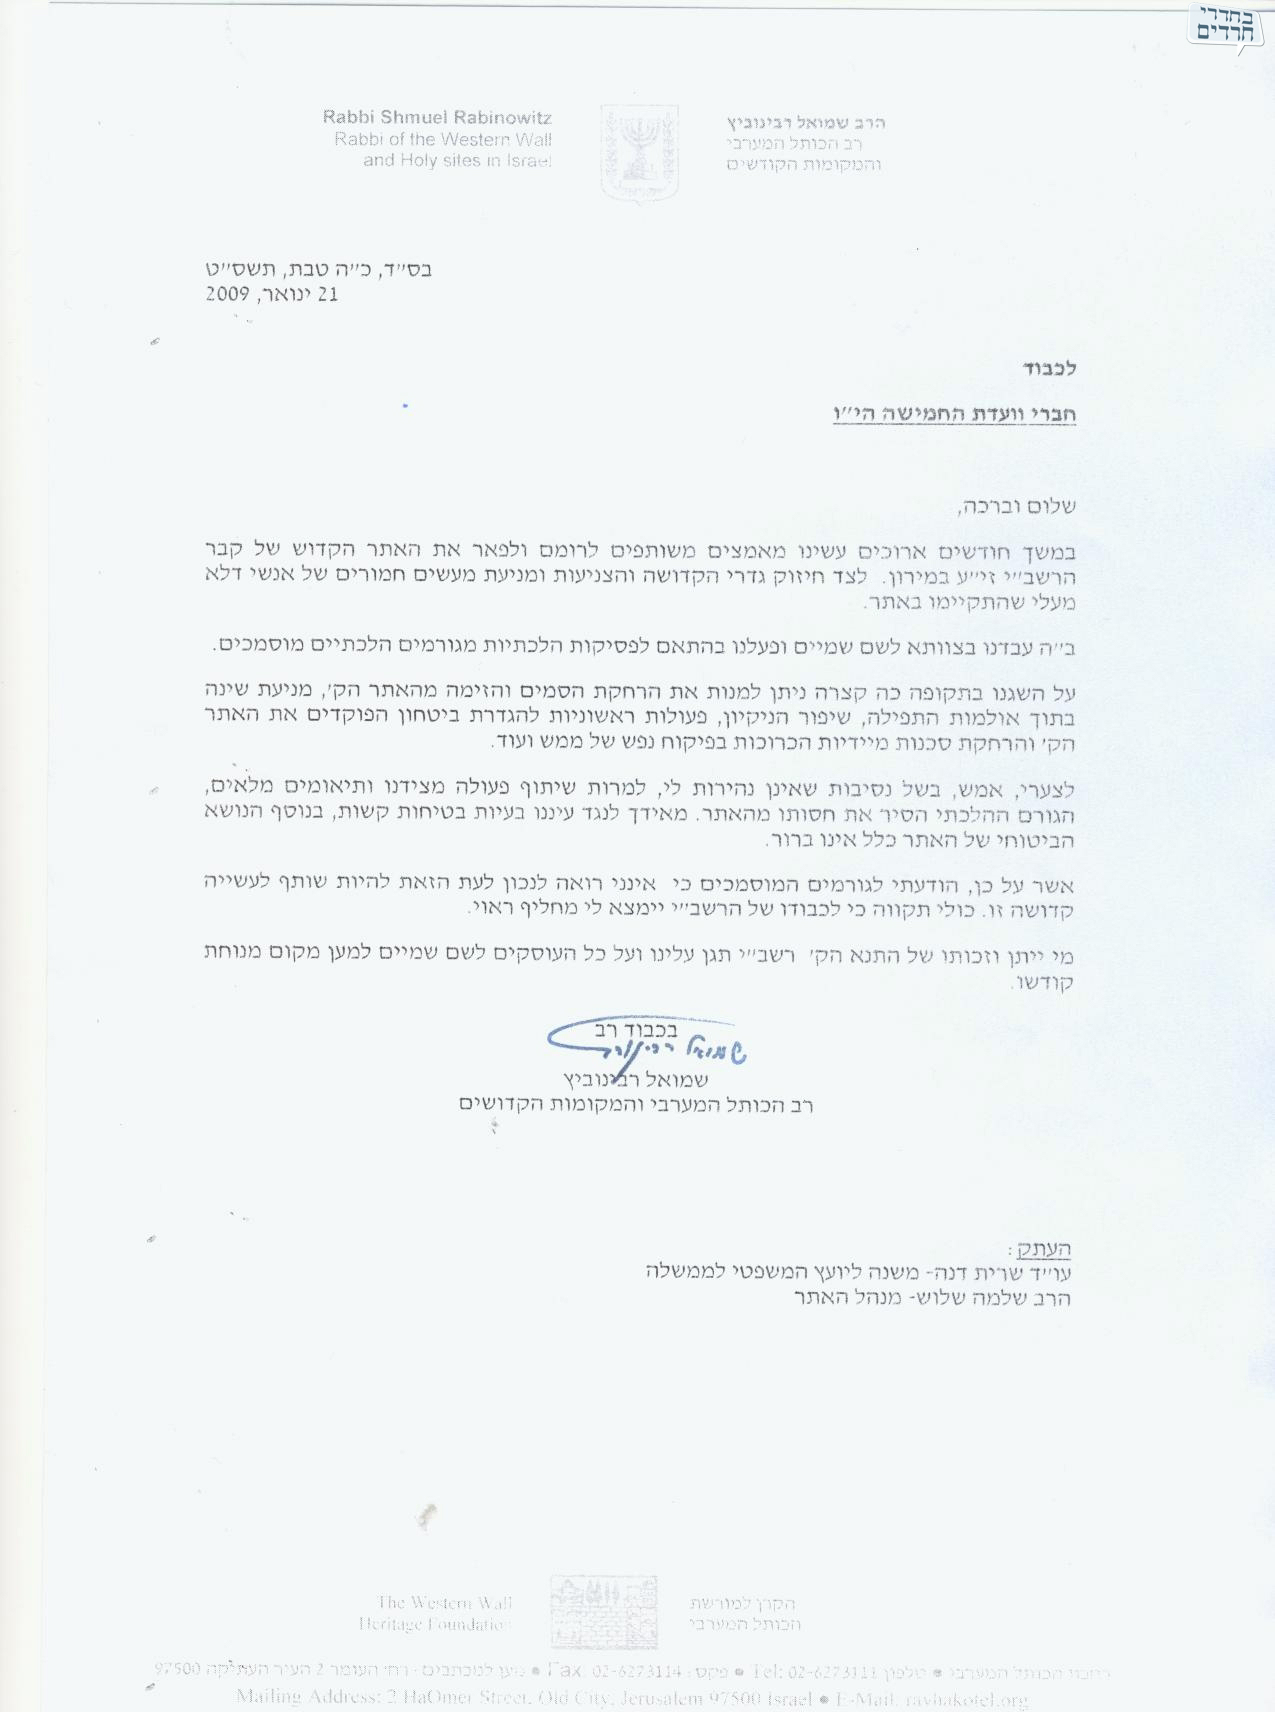 מכתב ההתפטרות של הרב רבינוביץ